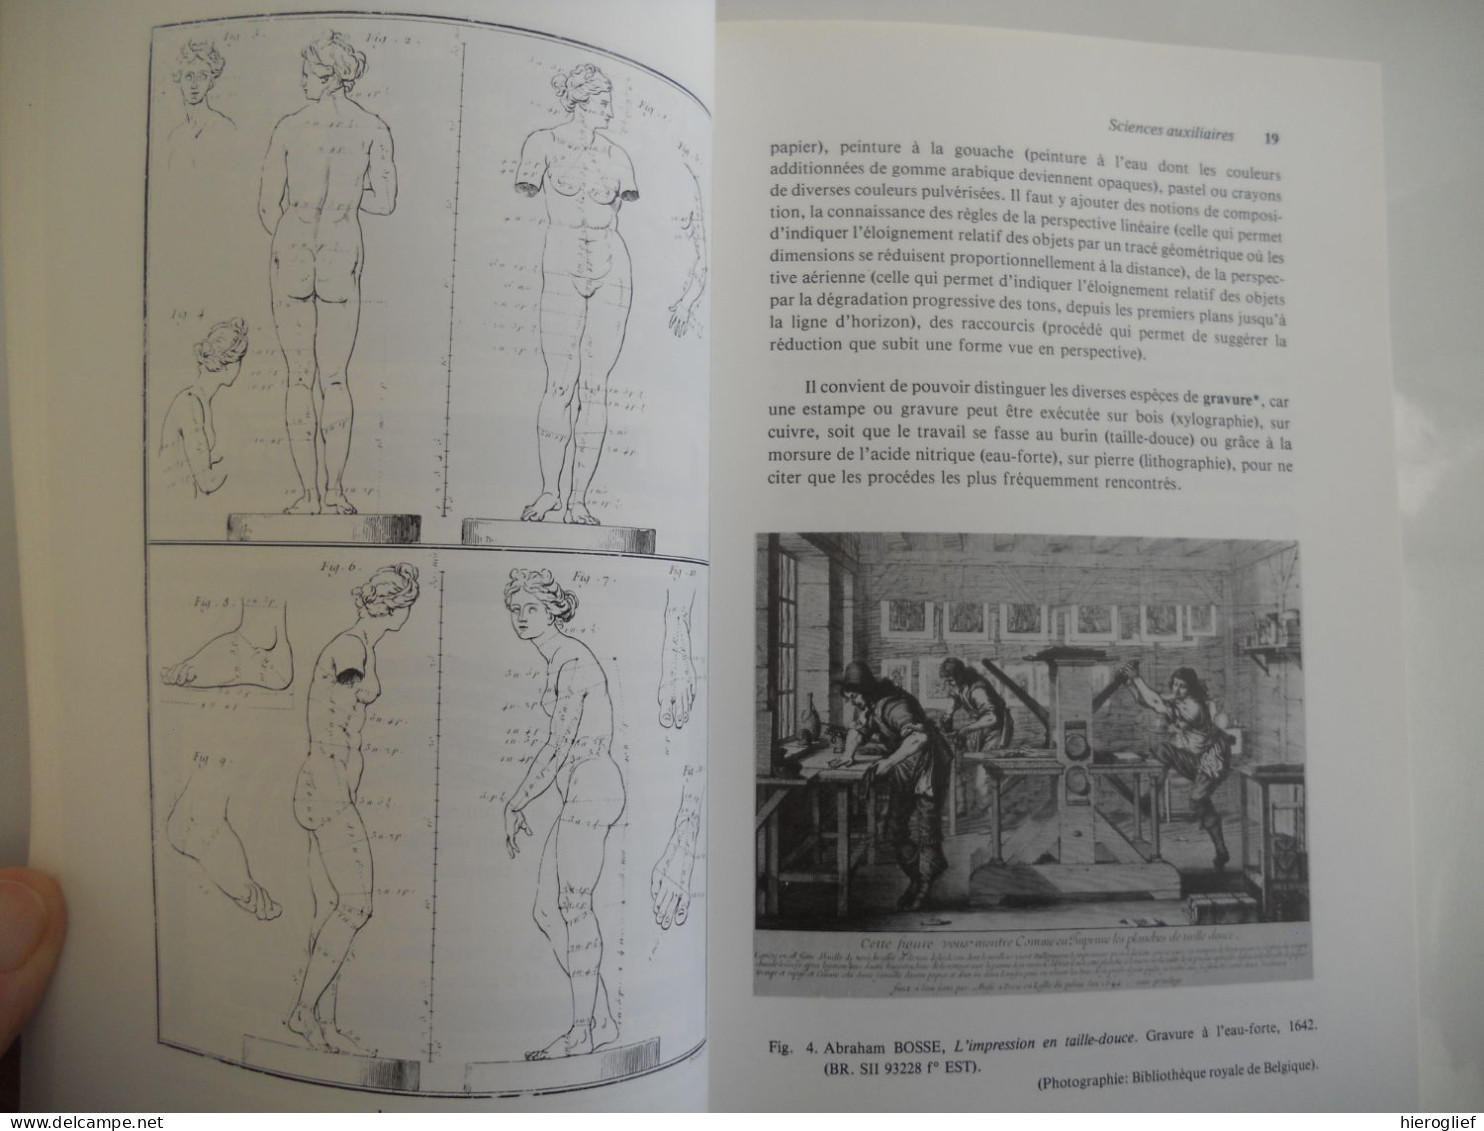 Introduction à l'archéologie et à l'histoire de l'art par Jacques Lavalleye 1979 Louvain-la-Neuve monumen ts objets